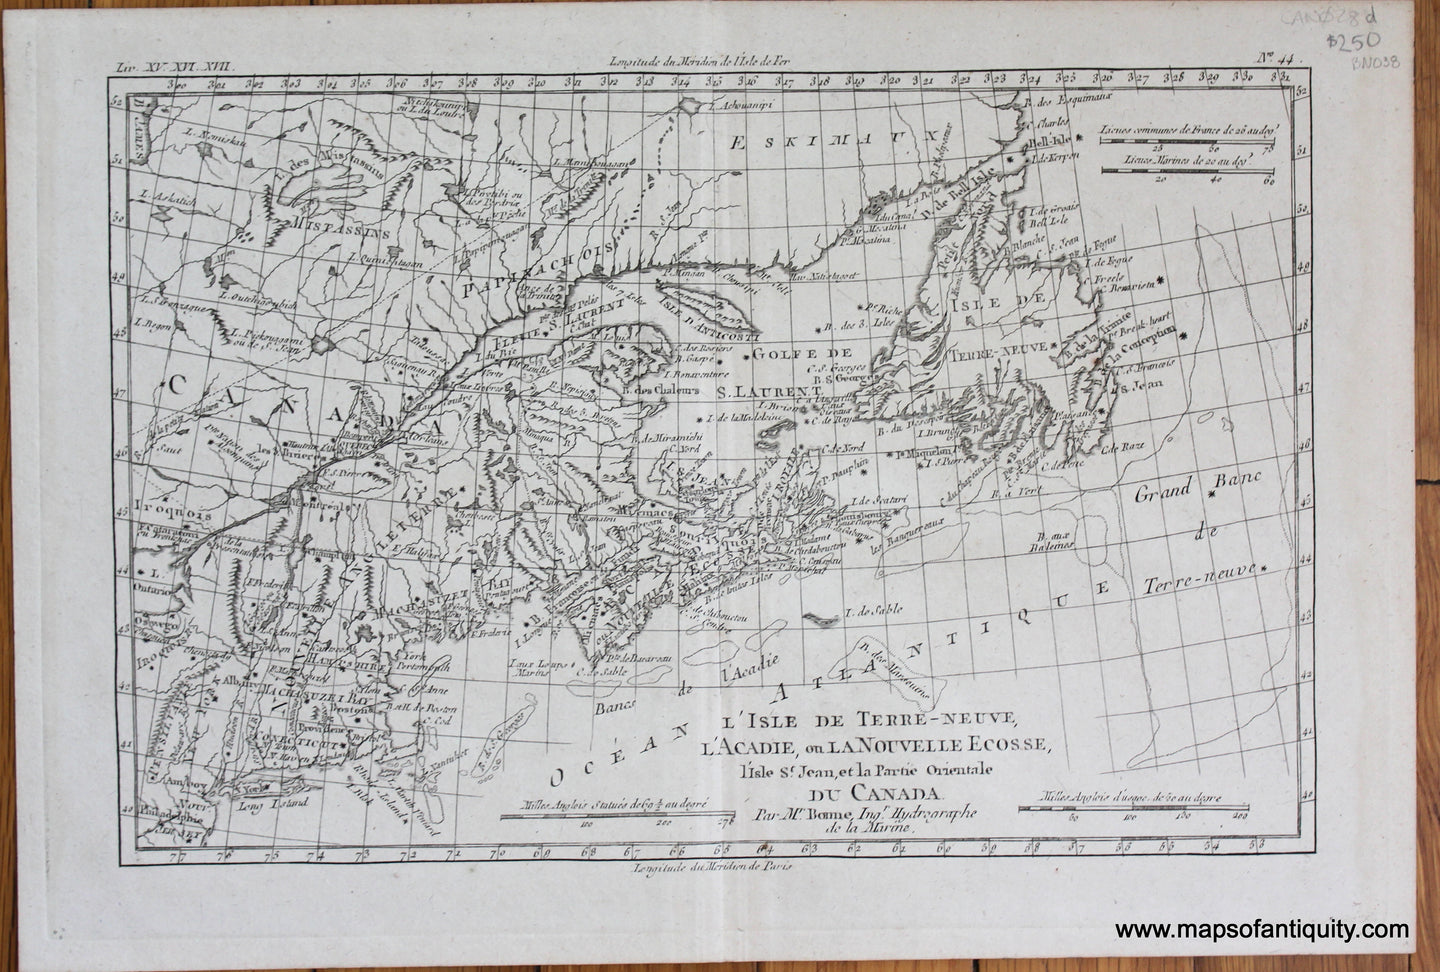 Antique map of the Canadian Maritimes Uncolored-Engraved-Antique-Map-L'isle-de-Terre-Neuve-l'Acadie-ou-la-Nouvelle-Ecosse-l'isle-Saint-Jean-et-la-partie-orientale-du-Canada.-North-America-Canada-1780-Raynal-and-Bonne-Maps-Of-Antiquity